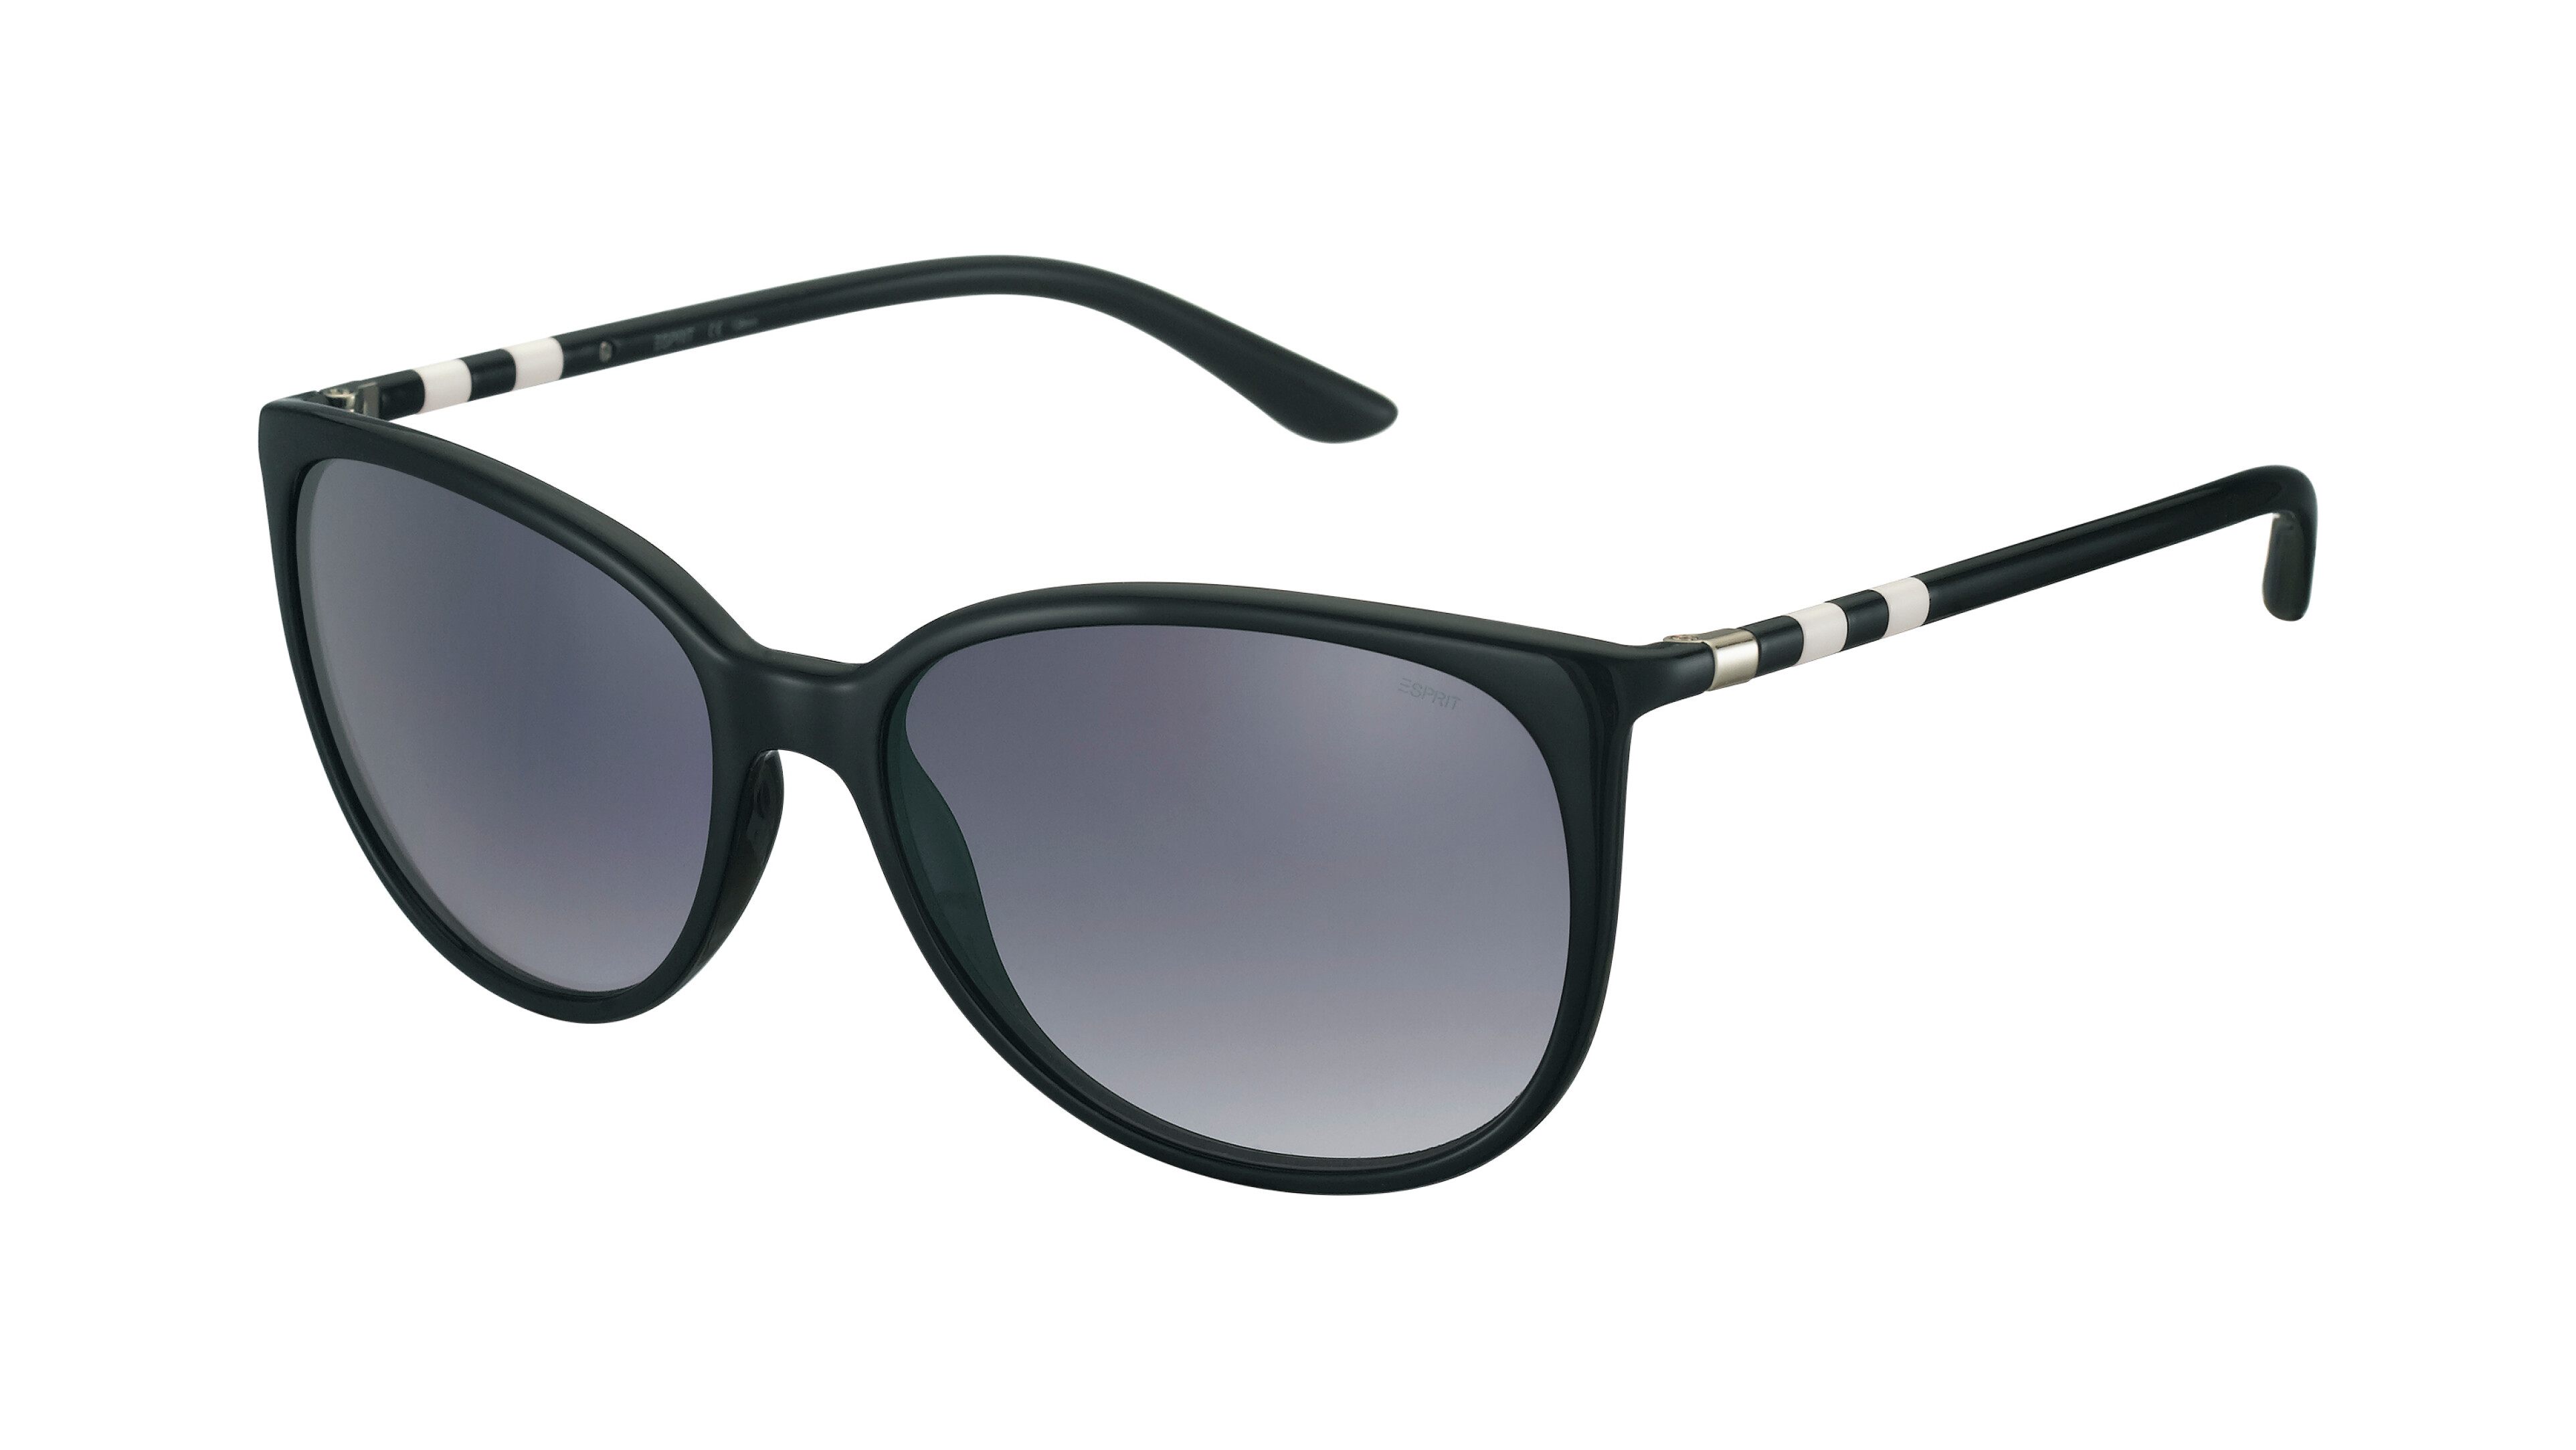 [products.image.front] Esprit 39166 538 Sonnenbrille